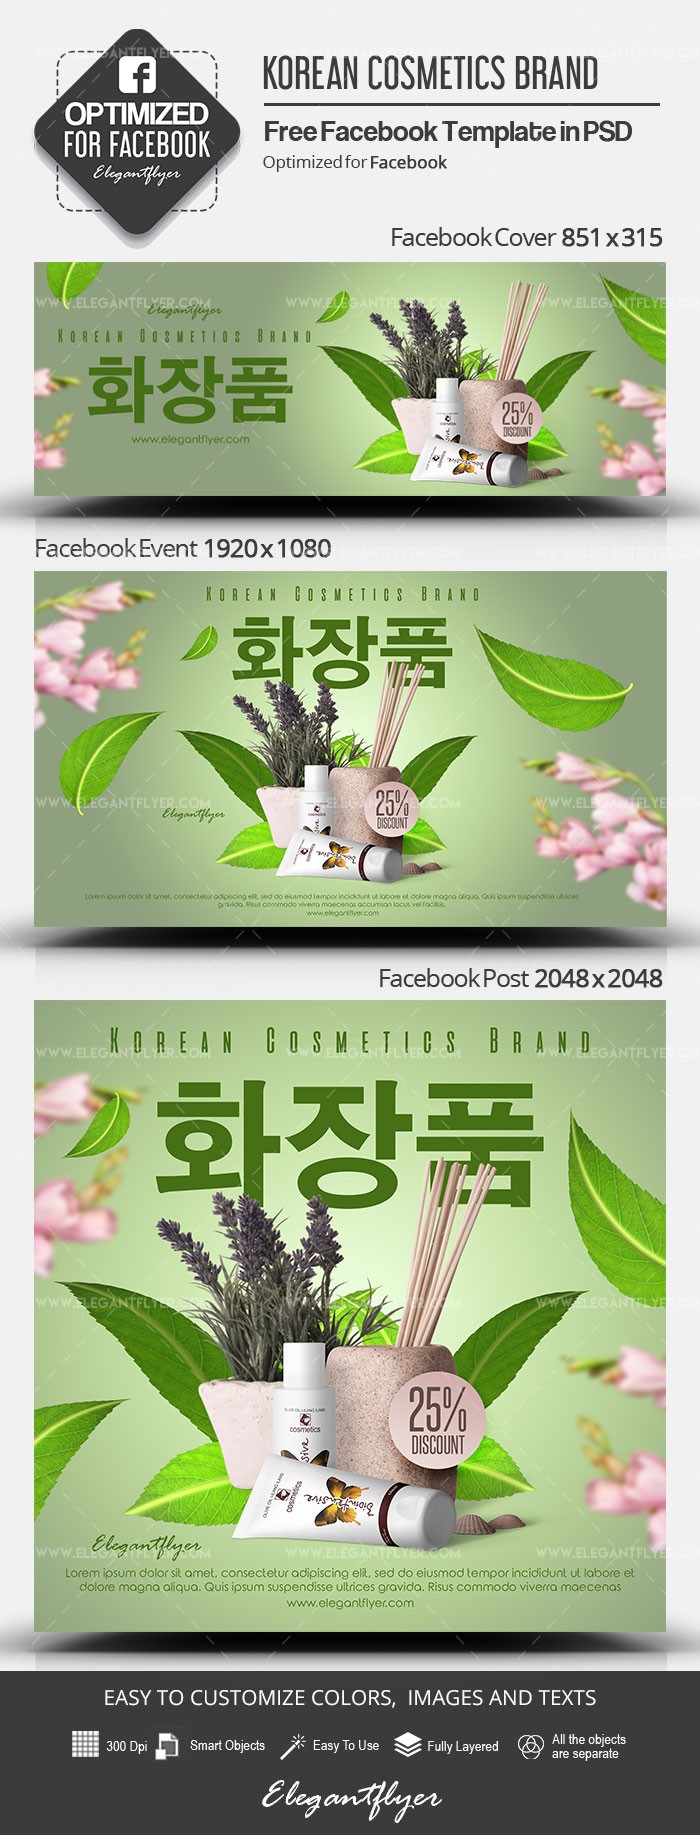 Marca de cosméticos coreana en Facebook by ElegantFlyer